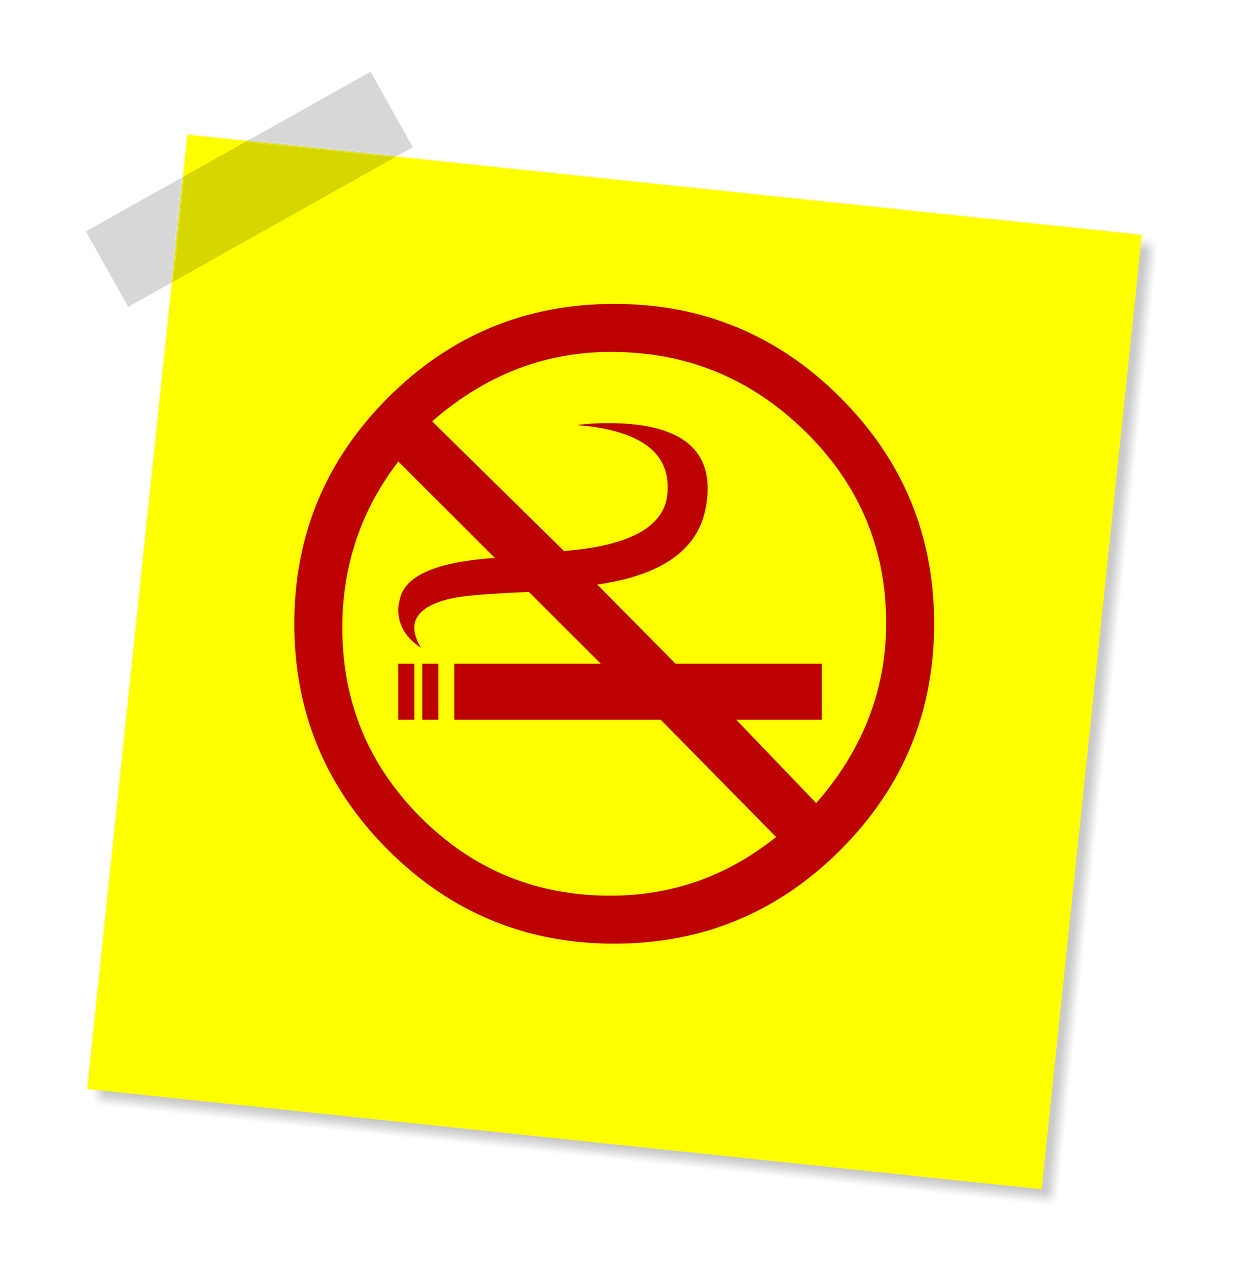 Stop met roken illustratie rood verbodsbord met sigaret erin tegen gele achtergrond